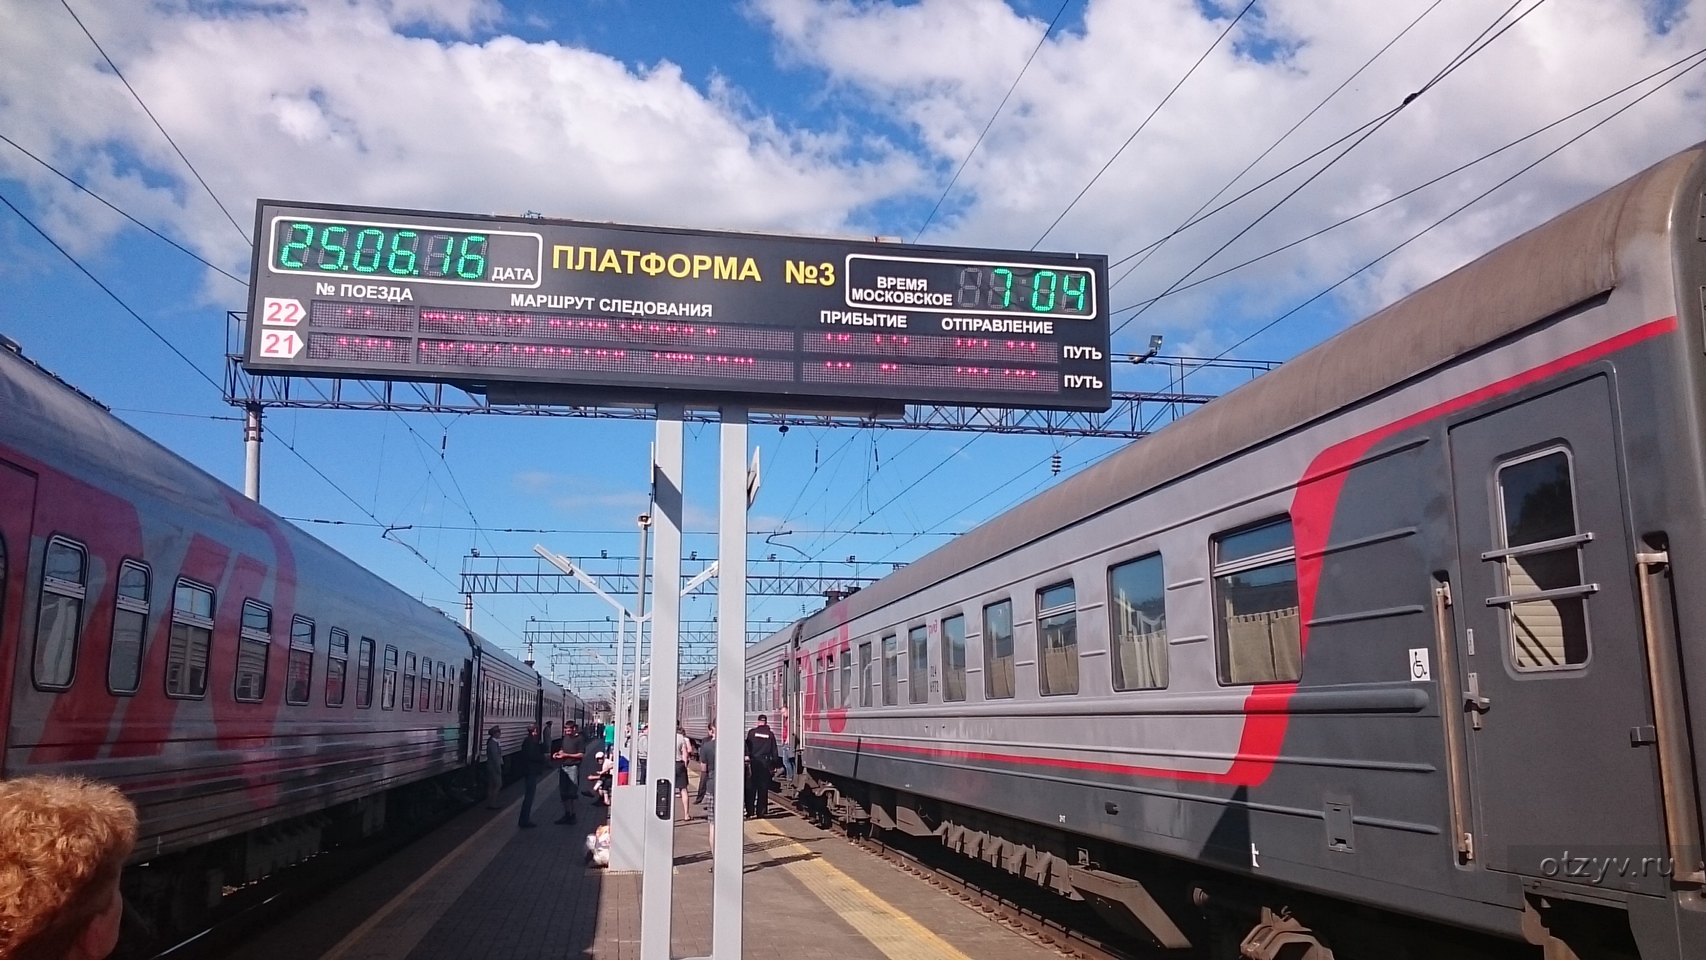 Пребывающий поезд. Поезд на вокзале. Платформа ЖД вокзала. Поезд Москва.